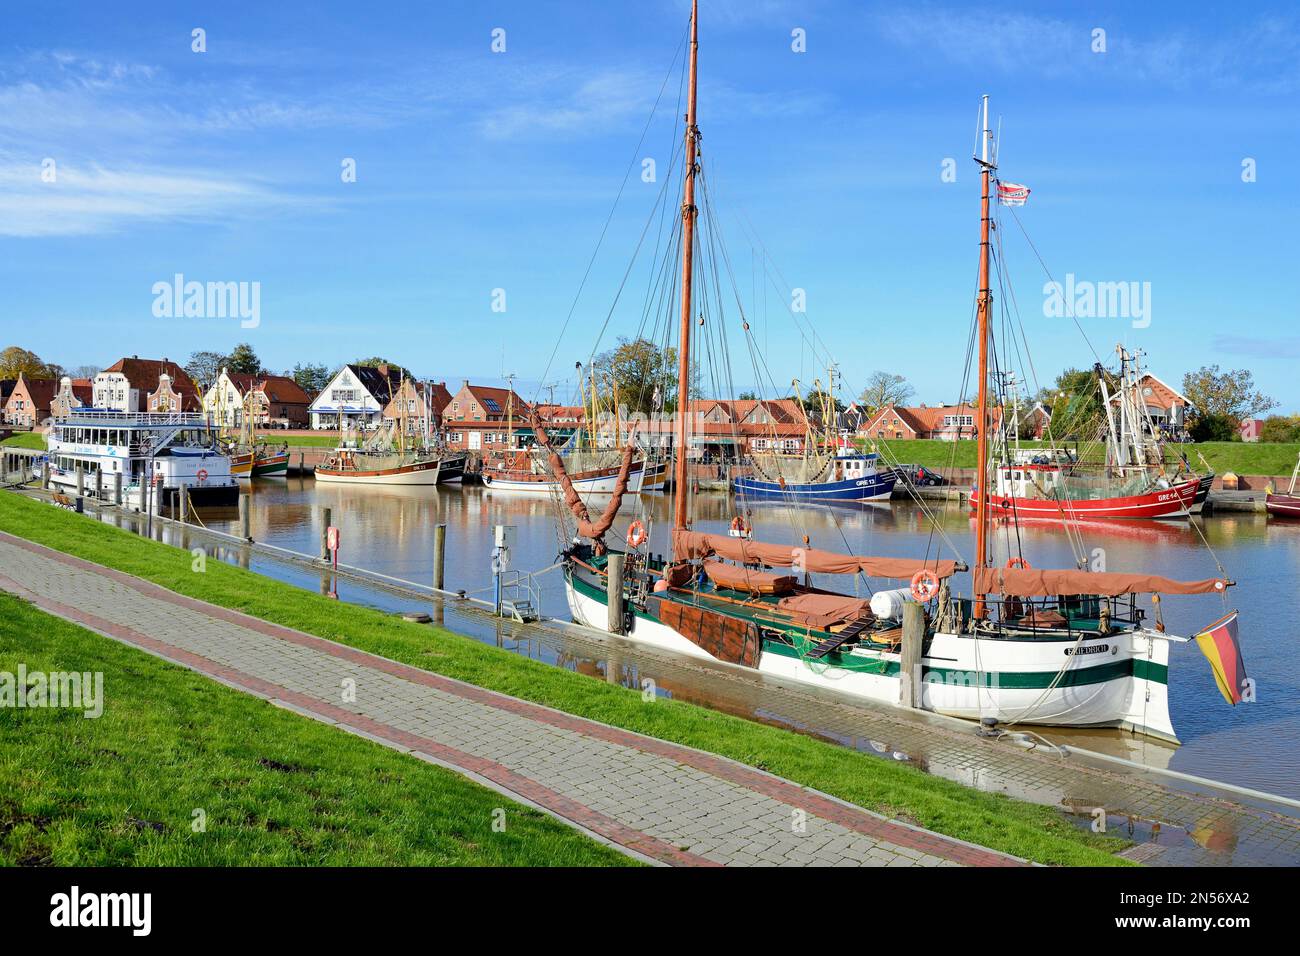 Flachboot, Ausflugsboot und Krabbenschneider im Hafen von Greetsiel, Nordsee, Niedersachsen, Deutschland Stockfoto